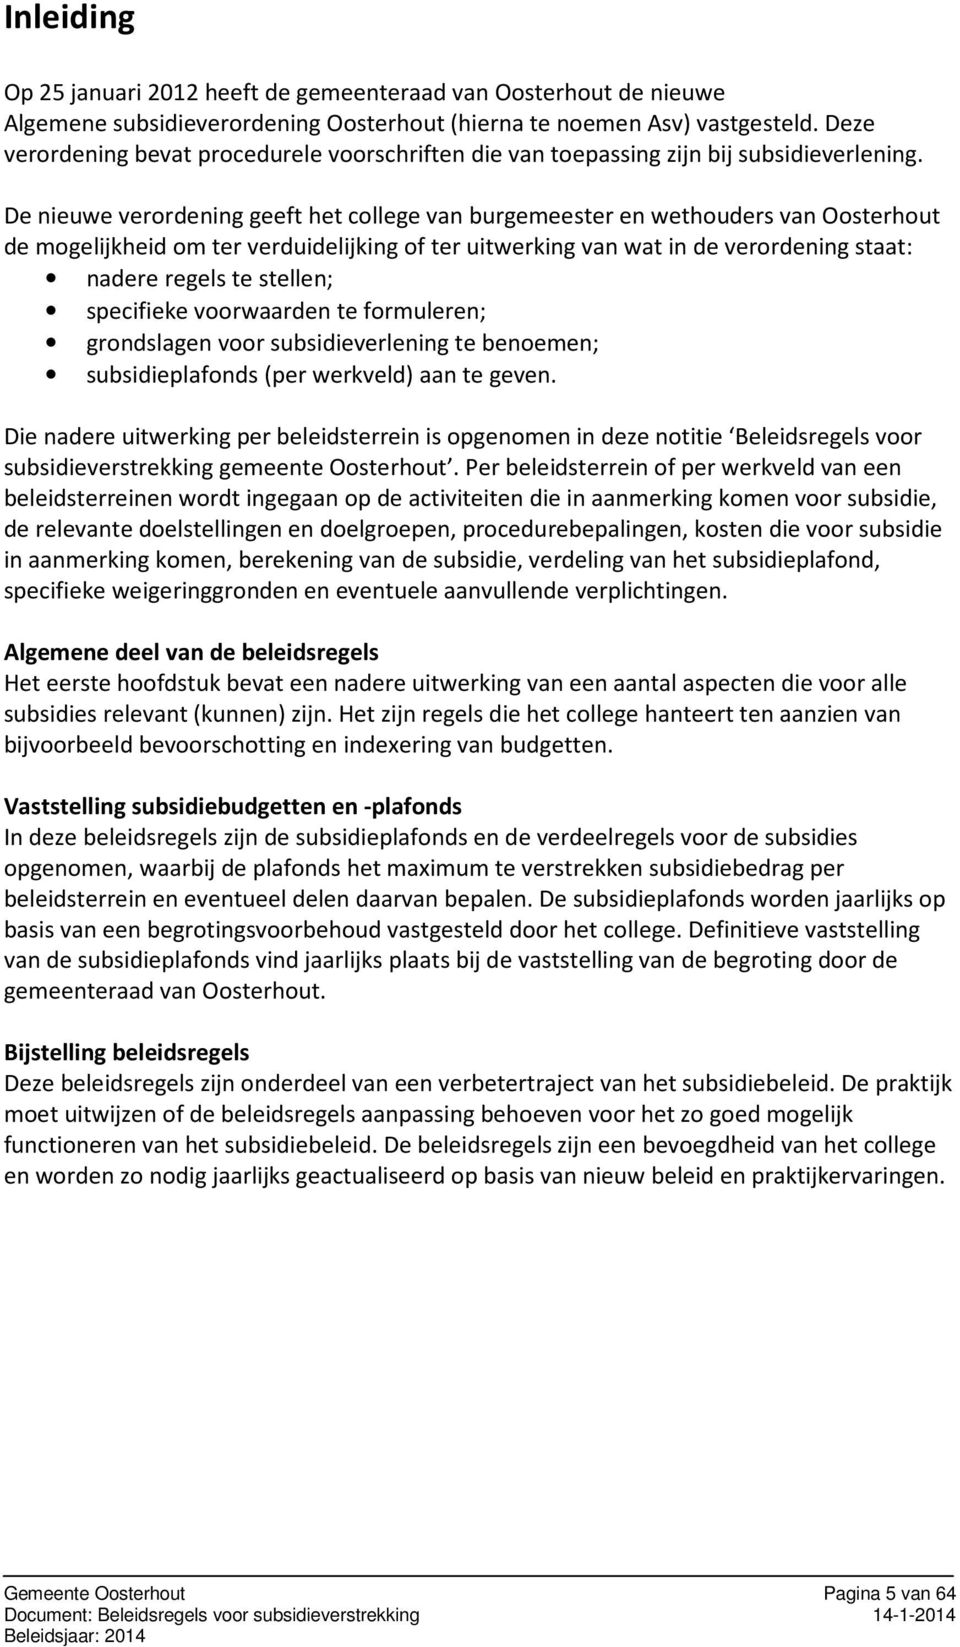 De nieuwe verordening geeft het college van burgemeester en wethouders van Oosterhout de mogelijkheid om ter verduidelijking of ter uitwerking van wat in de verordening staat: nadere regels te